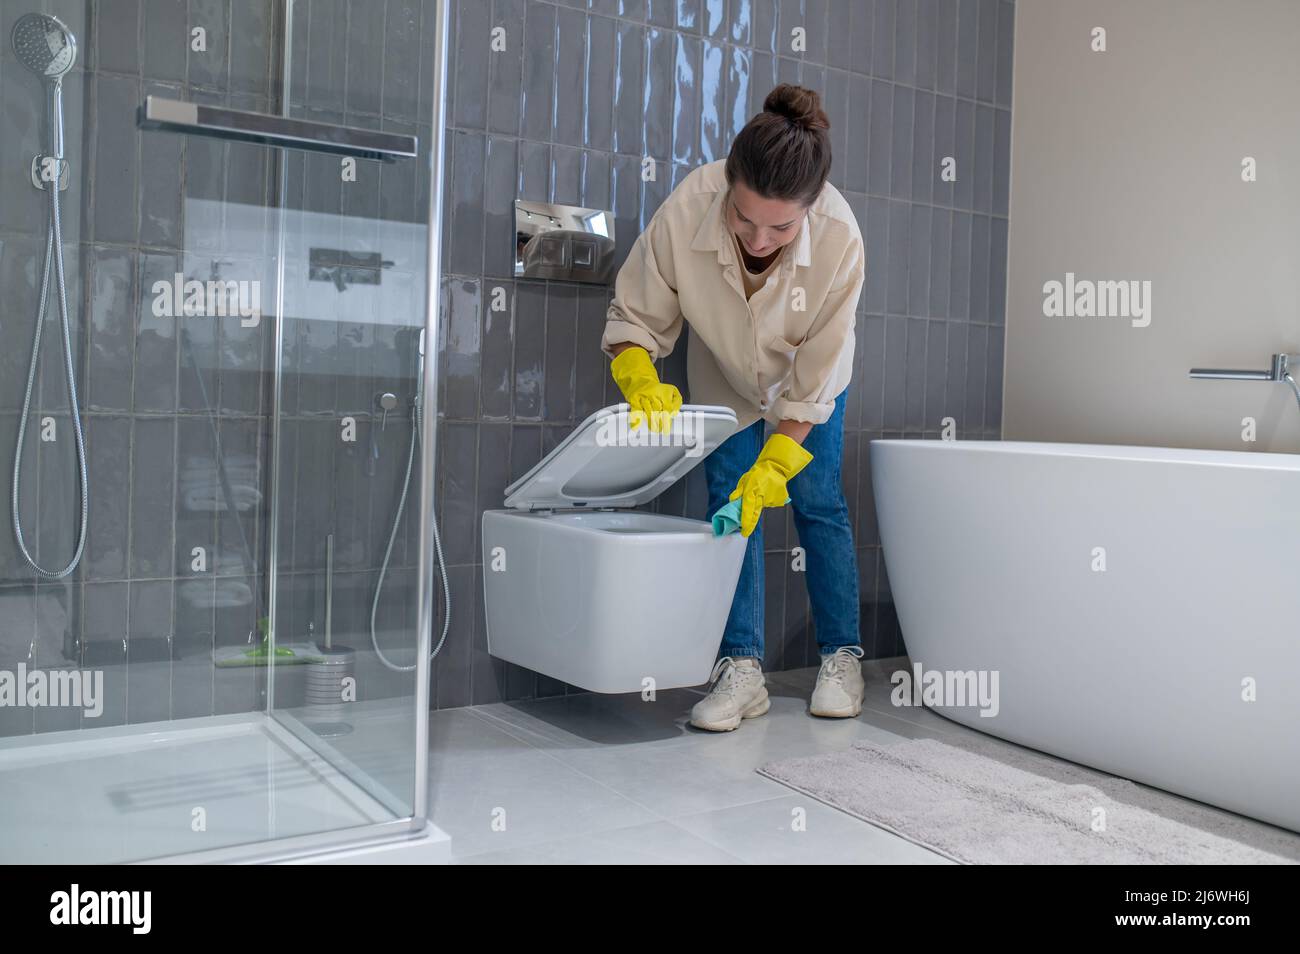 Yung femme de ménage avait l'air occupée pendant le nettoyage dans la salle de bains Banque D'Images